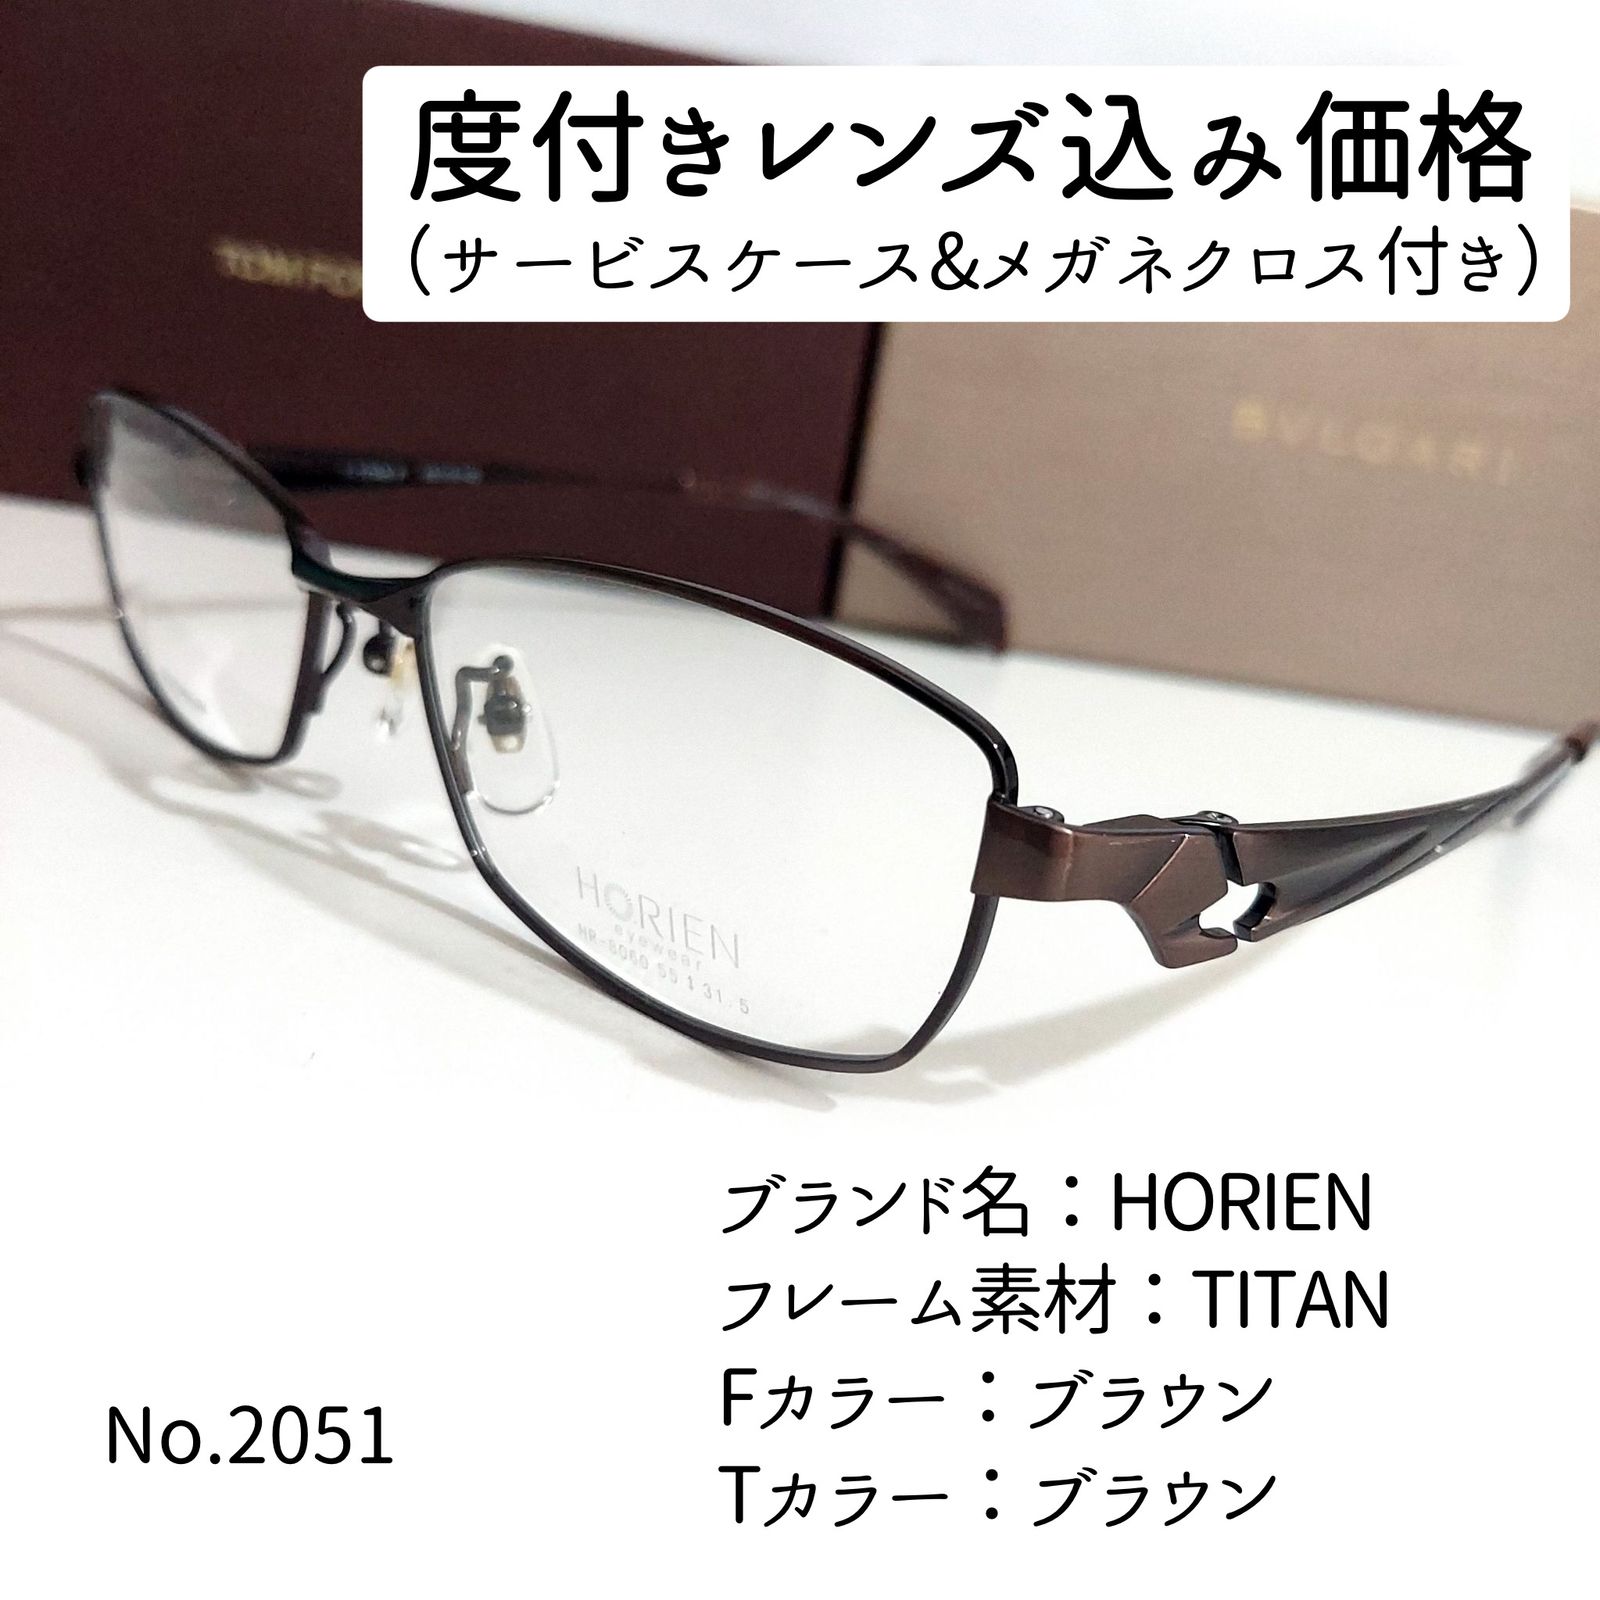 No.2051メガネ HORIEN【度数入り込み価格】 - スッキリ生活専門店